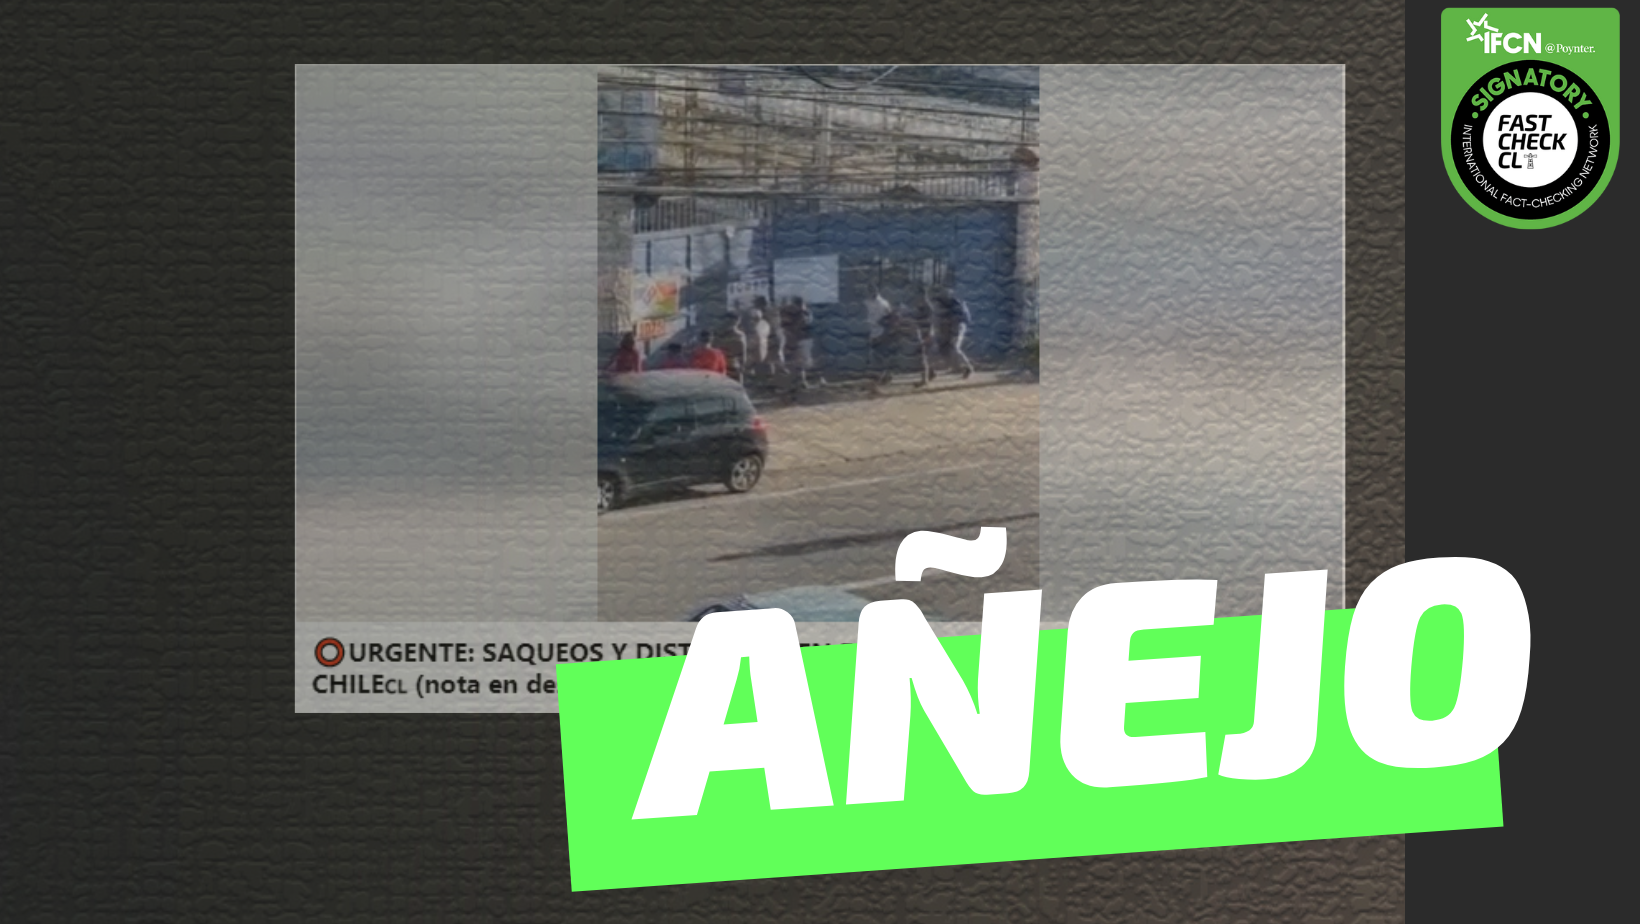 You are currently viewing (Video) “Urgente: Saqueos y disturbios en distribuidora de Gasco”: #Añejo